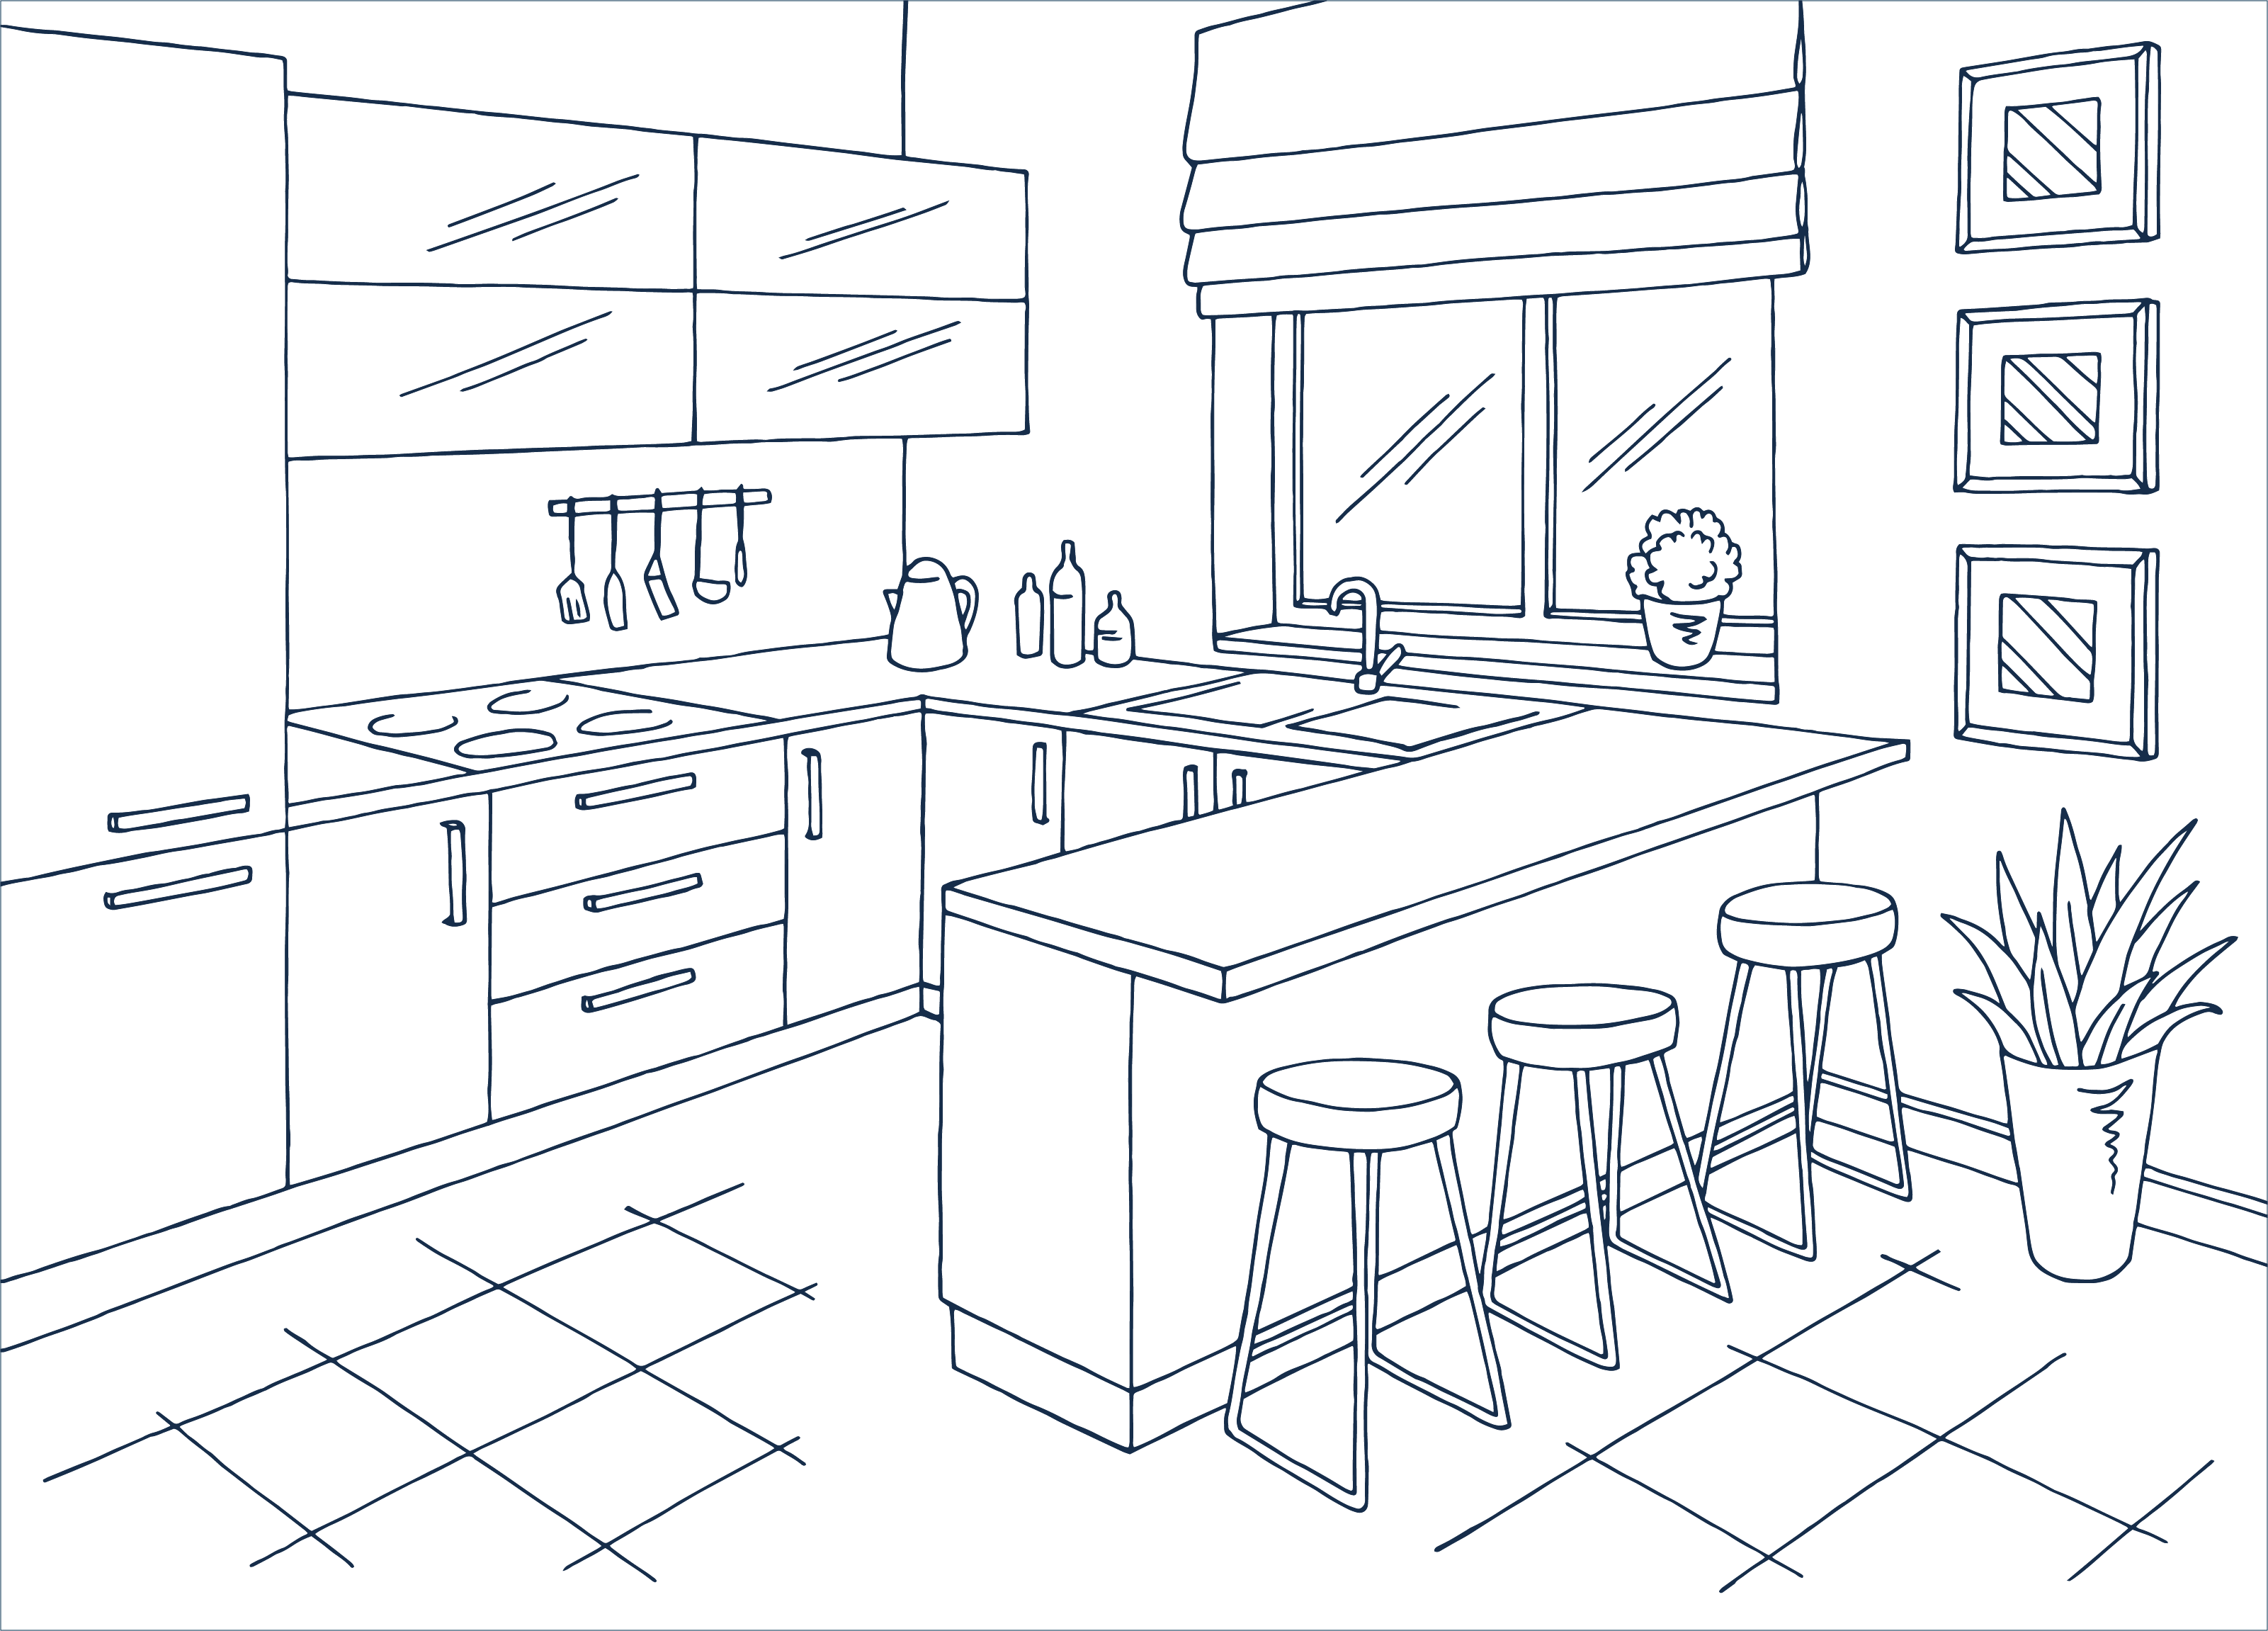 kitchen blue